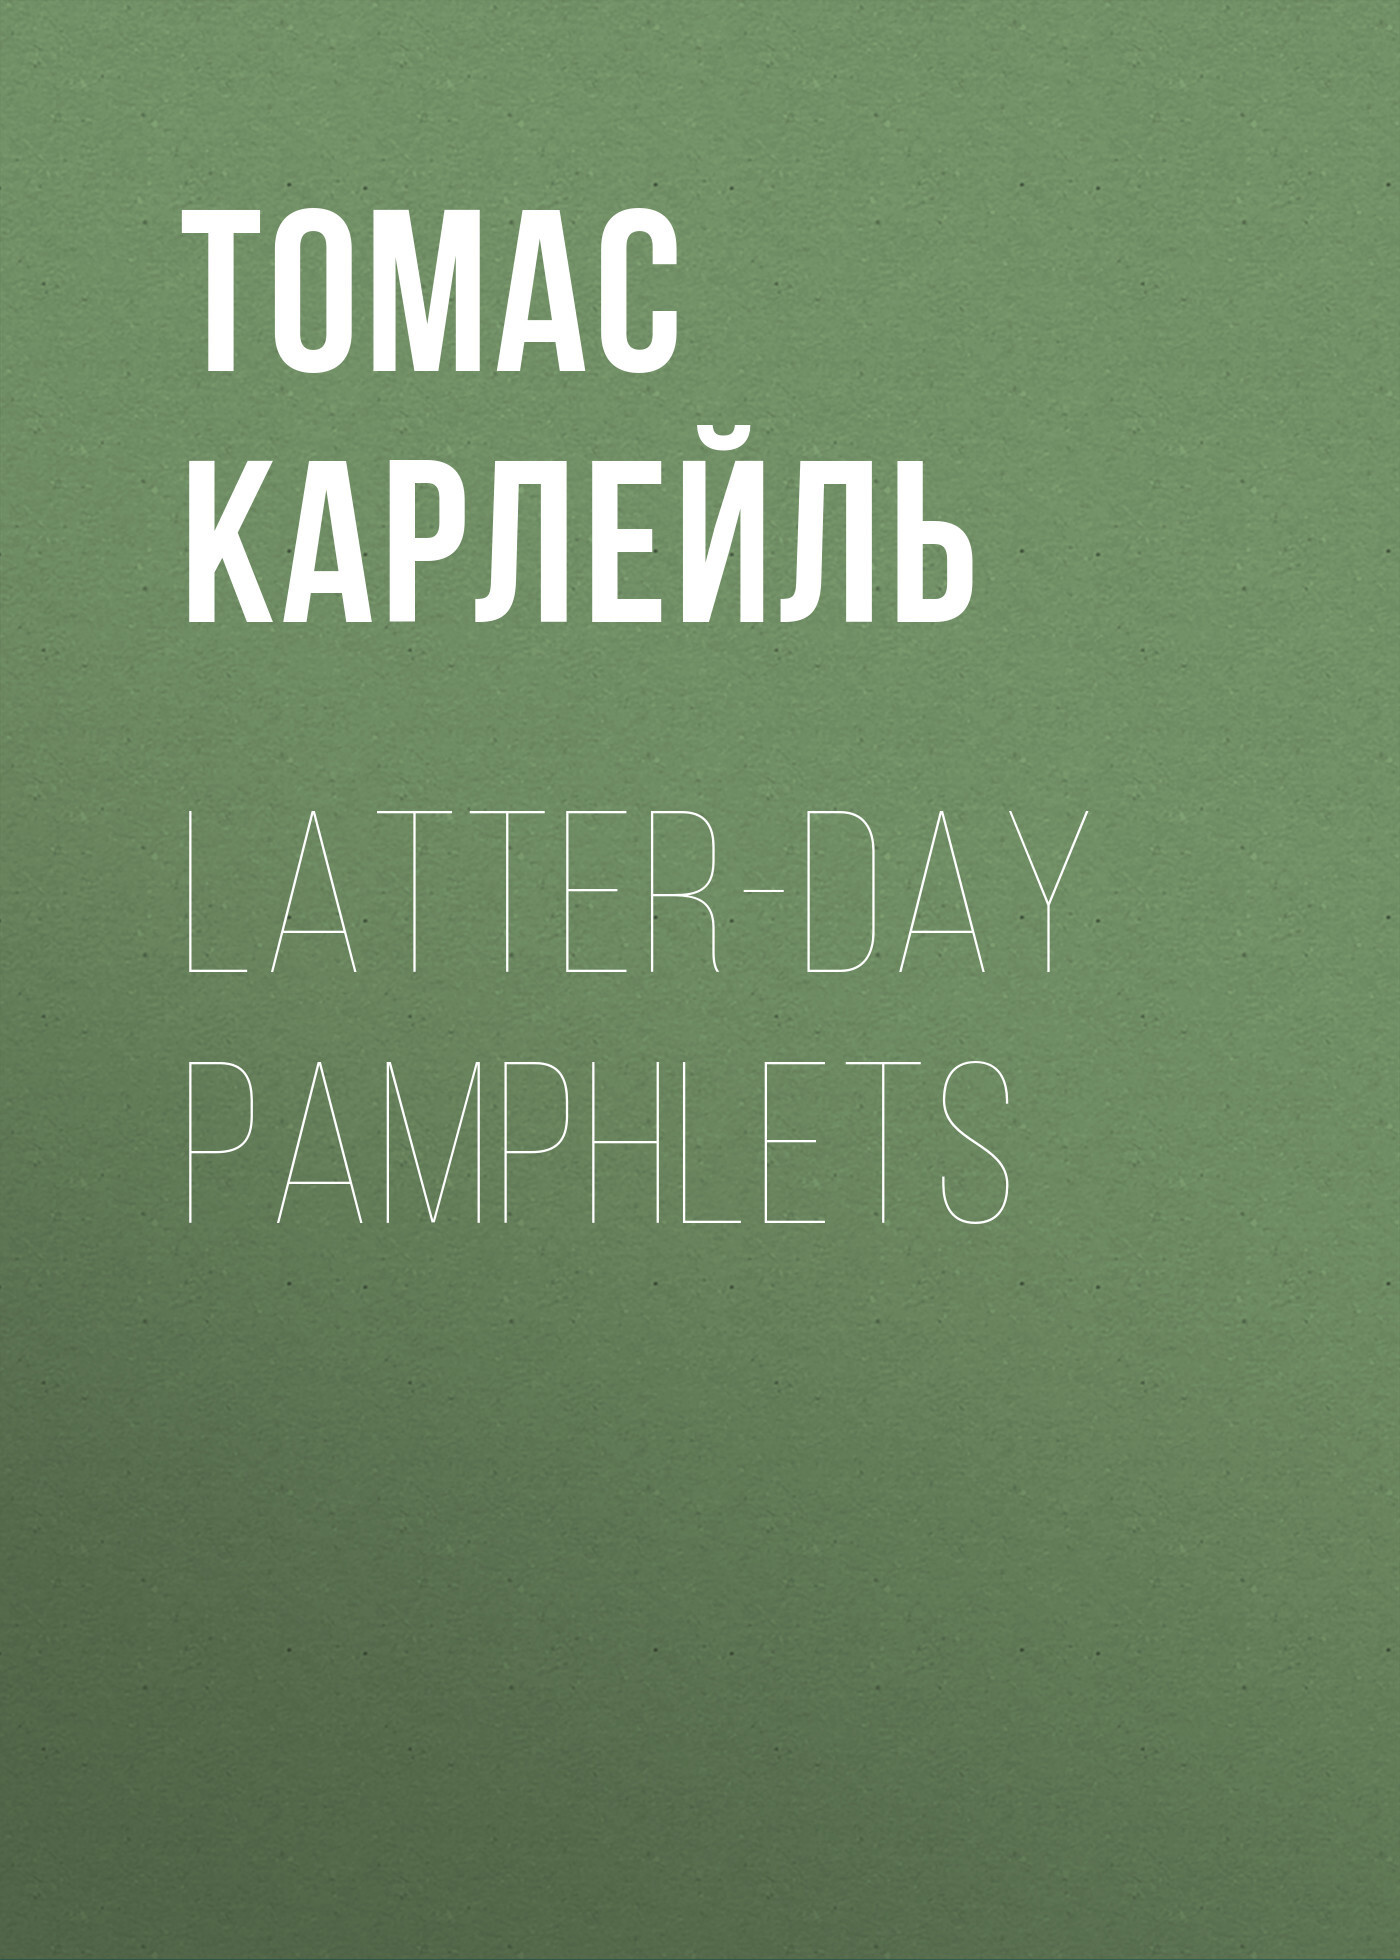 Книга Latter-Day Pamphlets из серии , созданная Томас Карлейль, может относится к жанру Зарубежная классика, Литература 19 века, Зарубежная старинная литература. Стоимость электронной книги Latter-Day Pamphlets с идентификатором 34841294 составляет 0 руб.